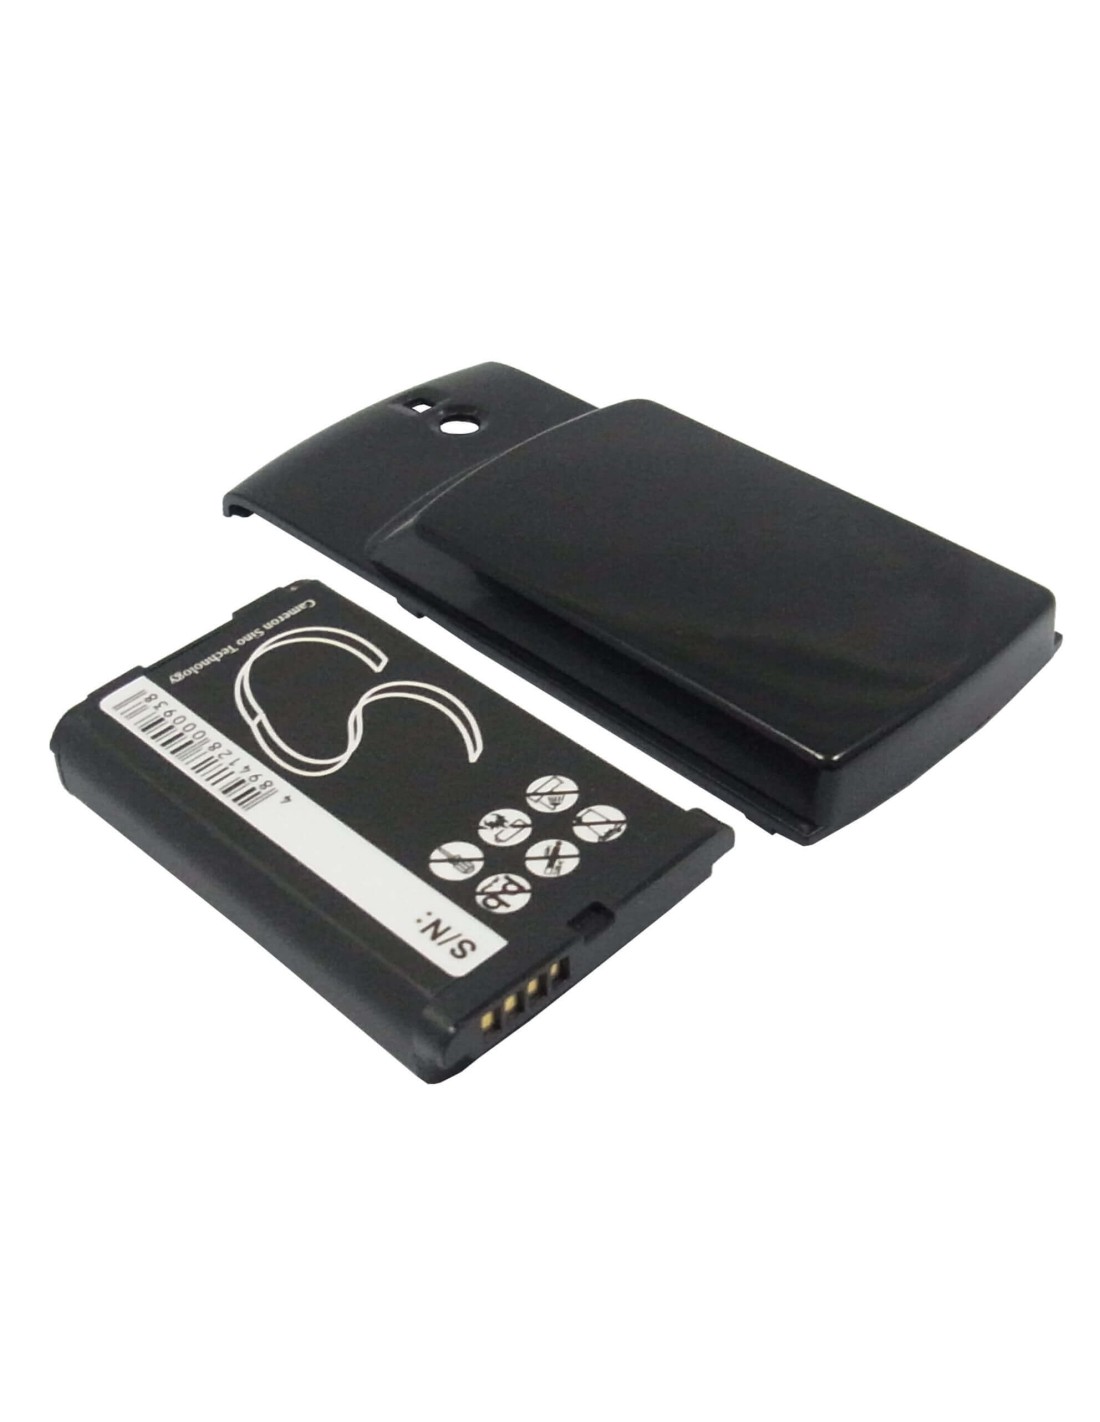 Battery for Blackberry 8100, 8100c, 8100r 3.7V, 1900mAh - 7.03Wh